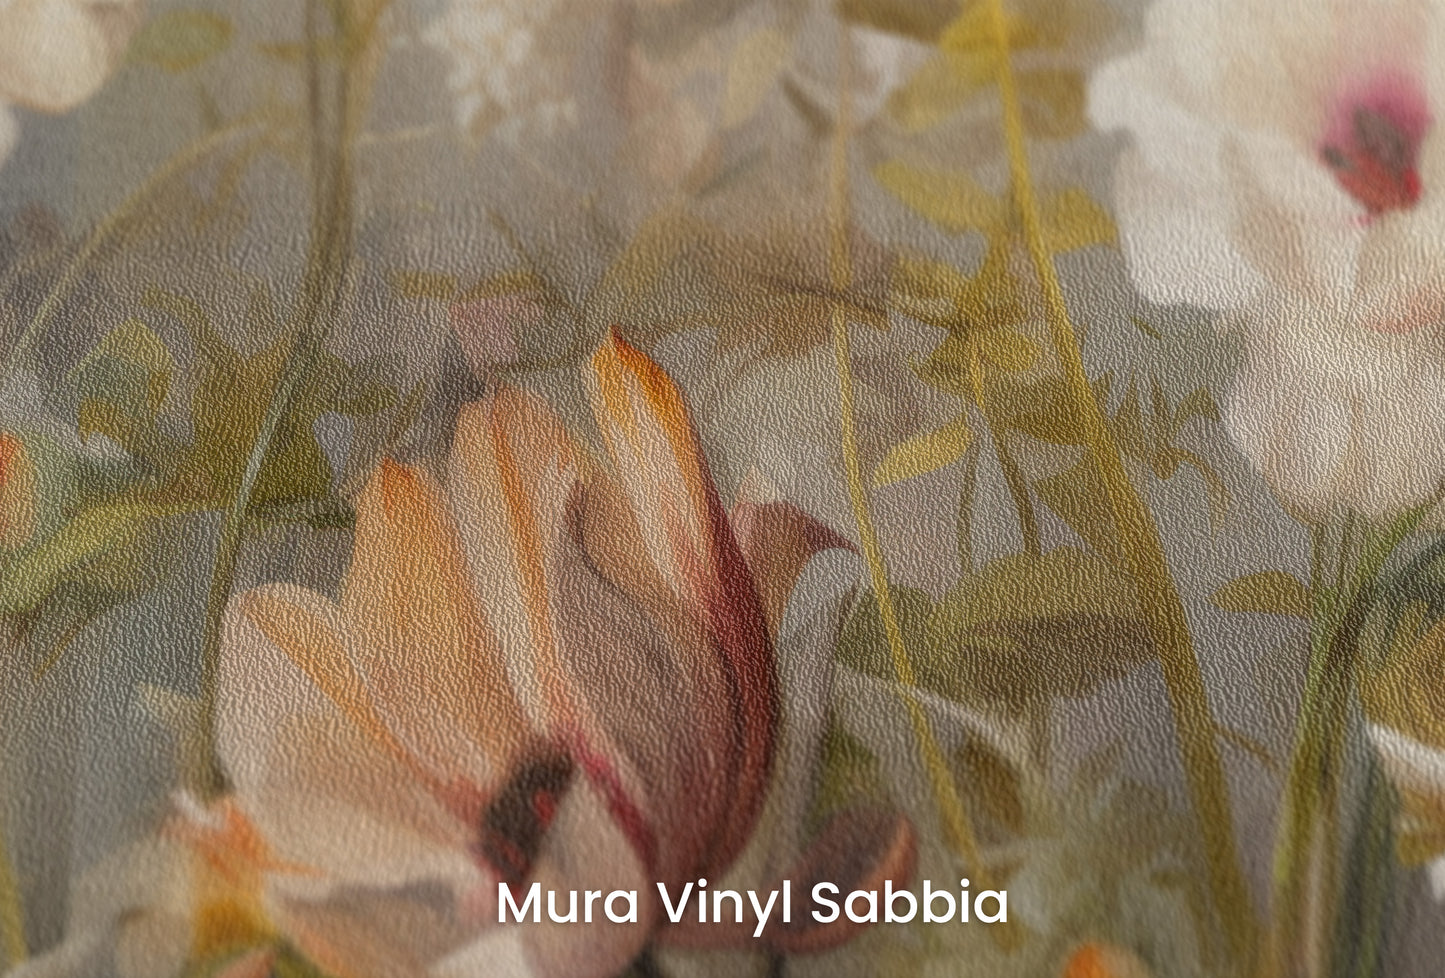 Zbliżenie na artystyczną fototapetę o nazwie Misty Floral Canvas na podłożu Mura Vinyl Sabbia struktura grubego ziarna piasku.